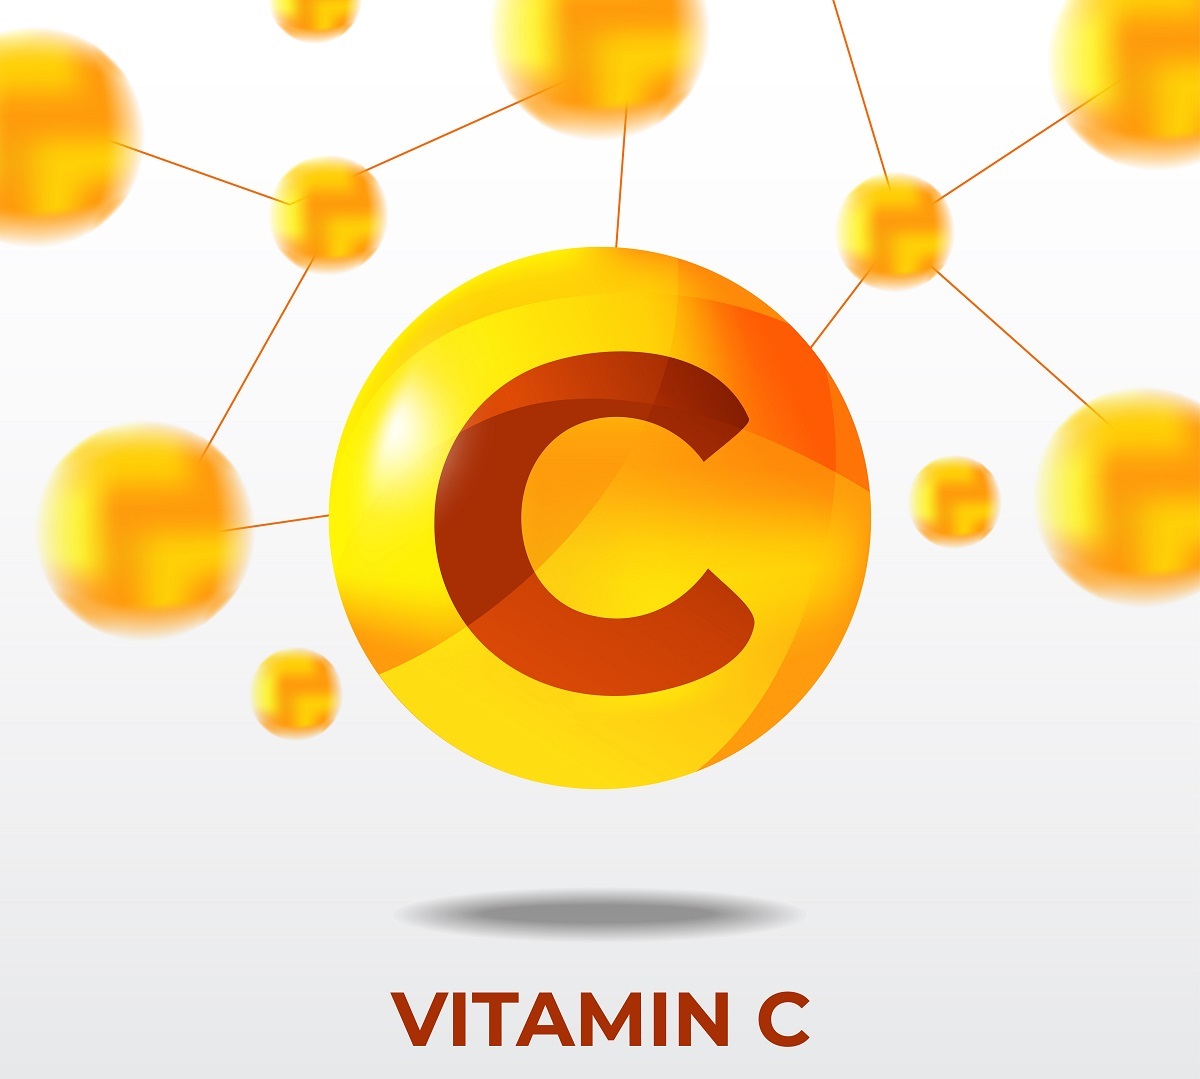 Vitamín C je stále zkoumán jako zajímavé přírodní léčivo